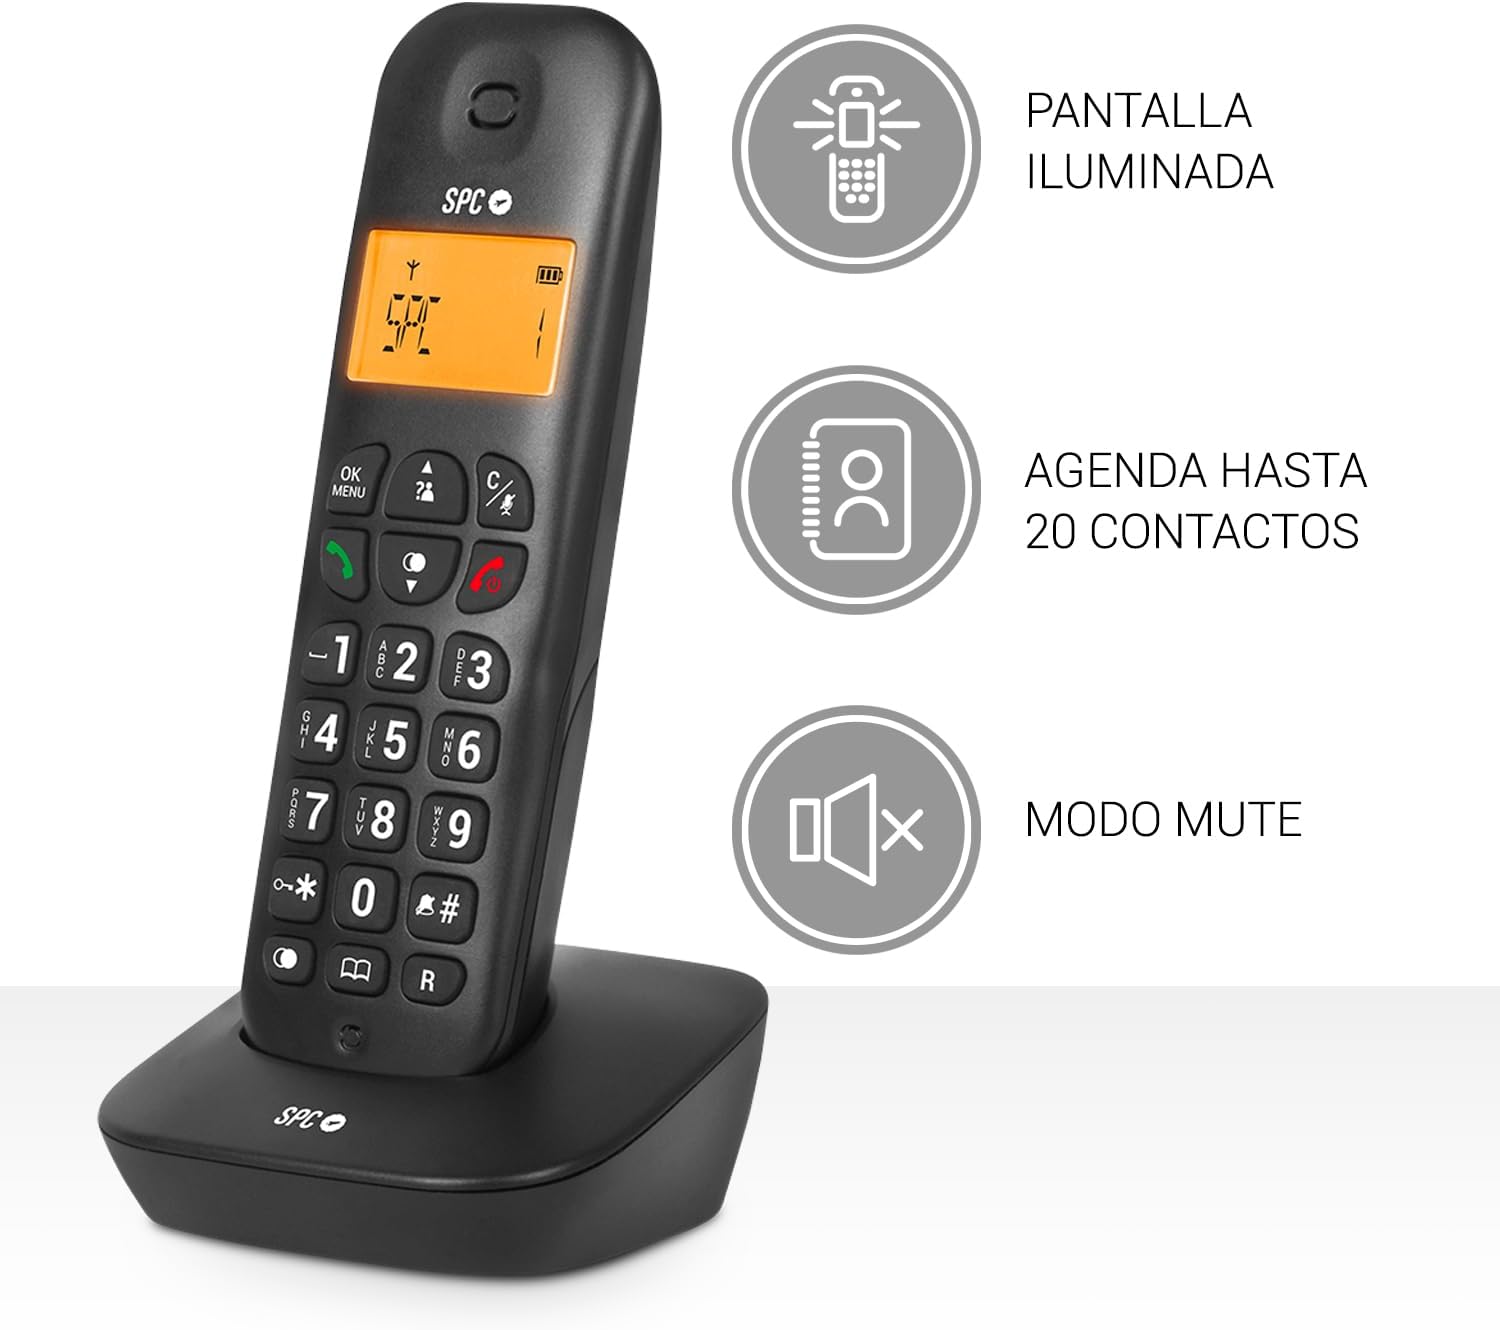 Téléphone Fixe Sans Fil SPC Air - Écran Rétroéclairé 35x22 mm - Identification de l'appelant - 5 Mélodies Disponibles - Pratique et Simple - Disponible en 2 Coloris - Possibilité de Transfert d'Appel - Coloris Noir